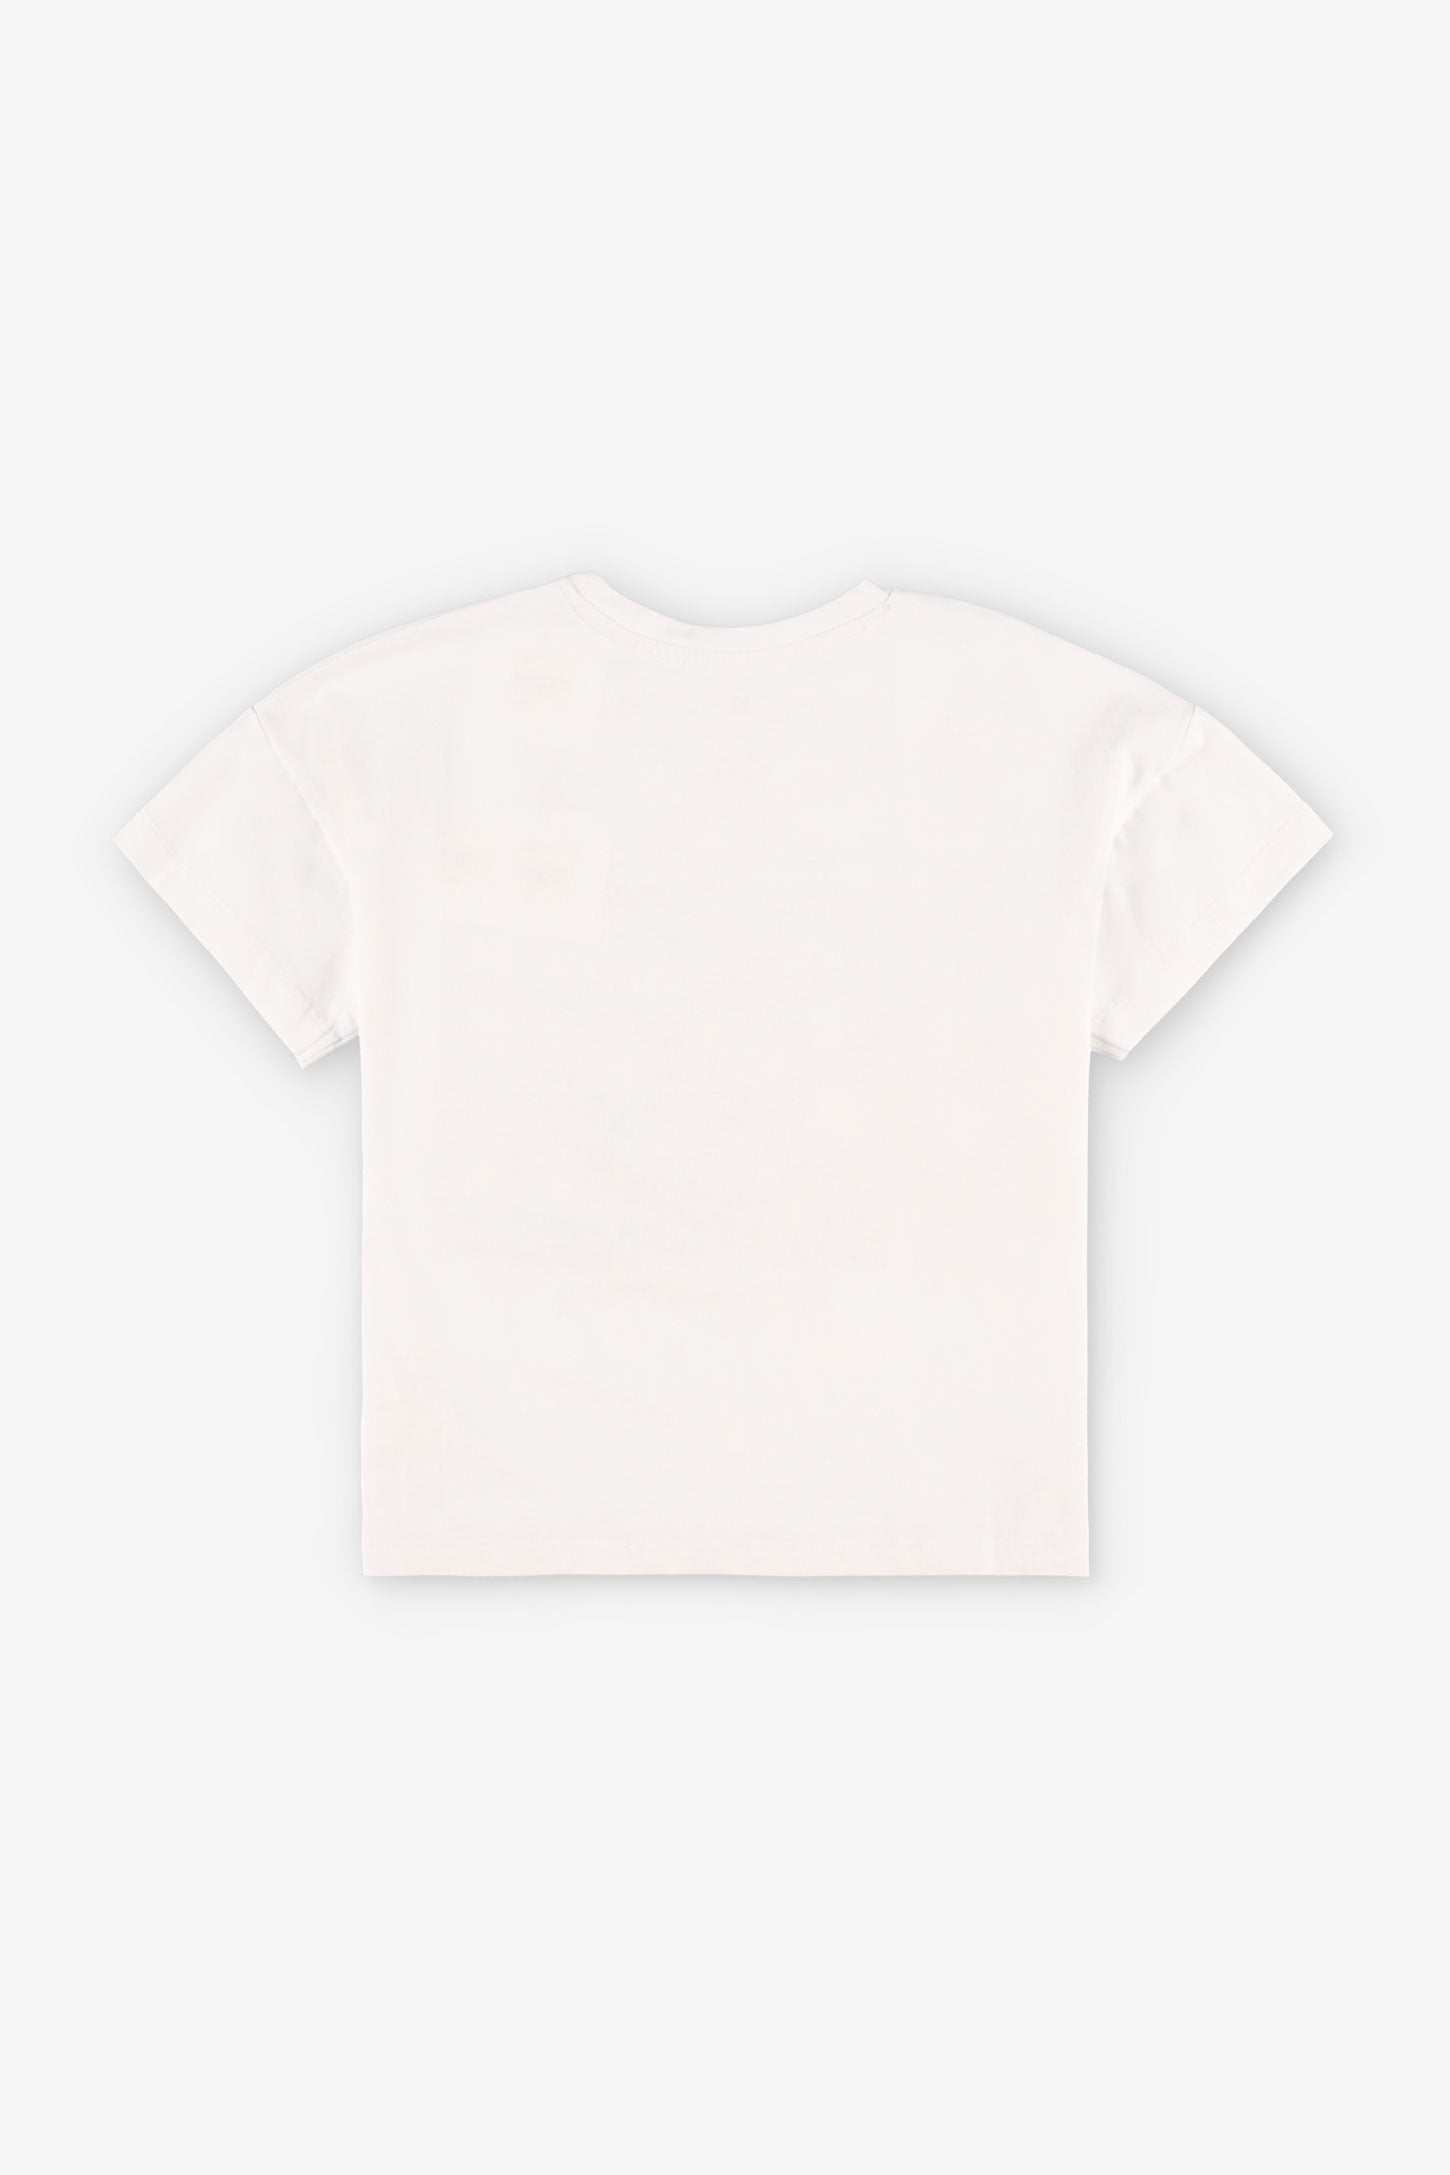 T-shirt coupe ample imprimé en coton, 2/20$ - Enfant fille && BLANC